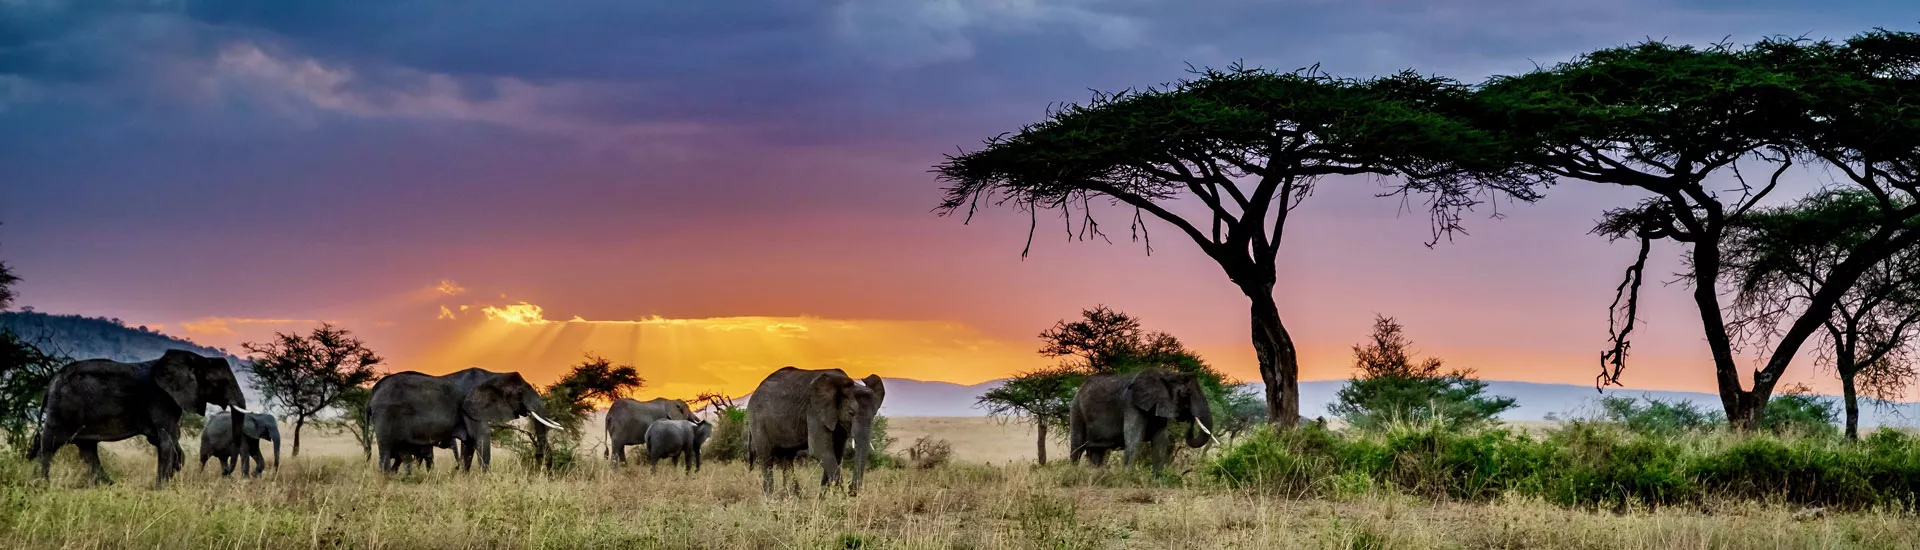 Elefanten in der Wildnis von Namibia